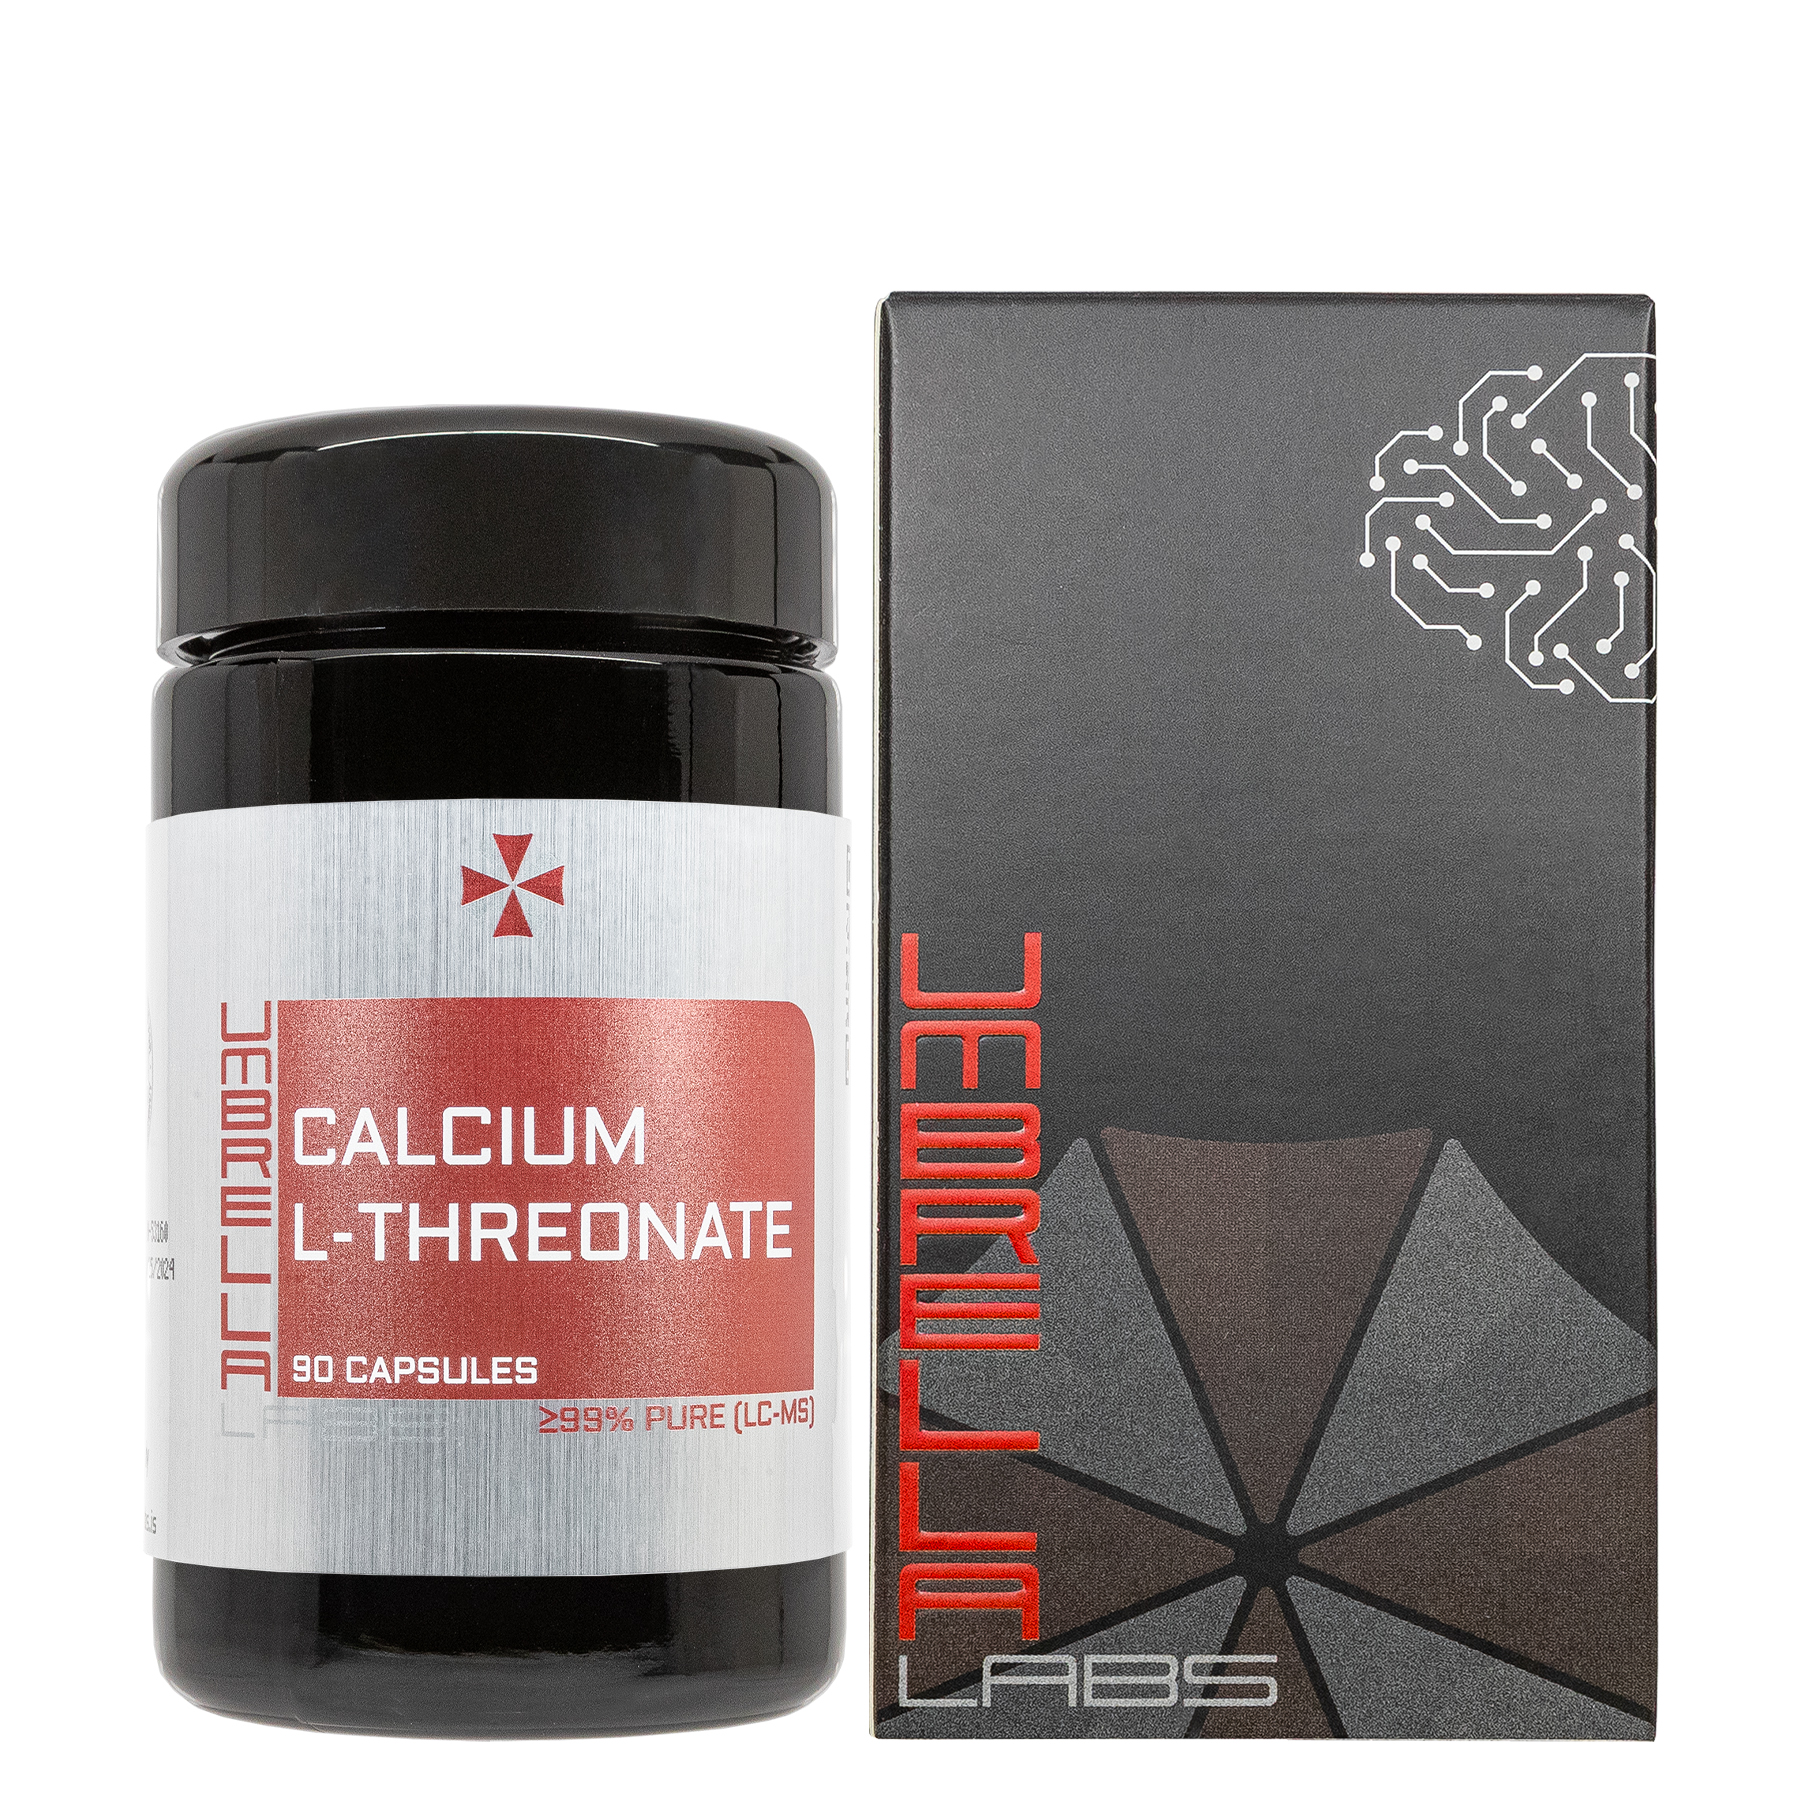 calcium l threonate powder